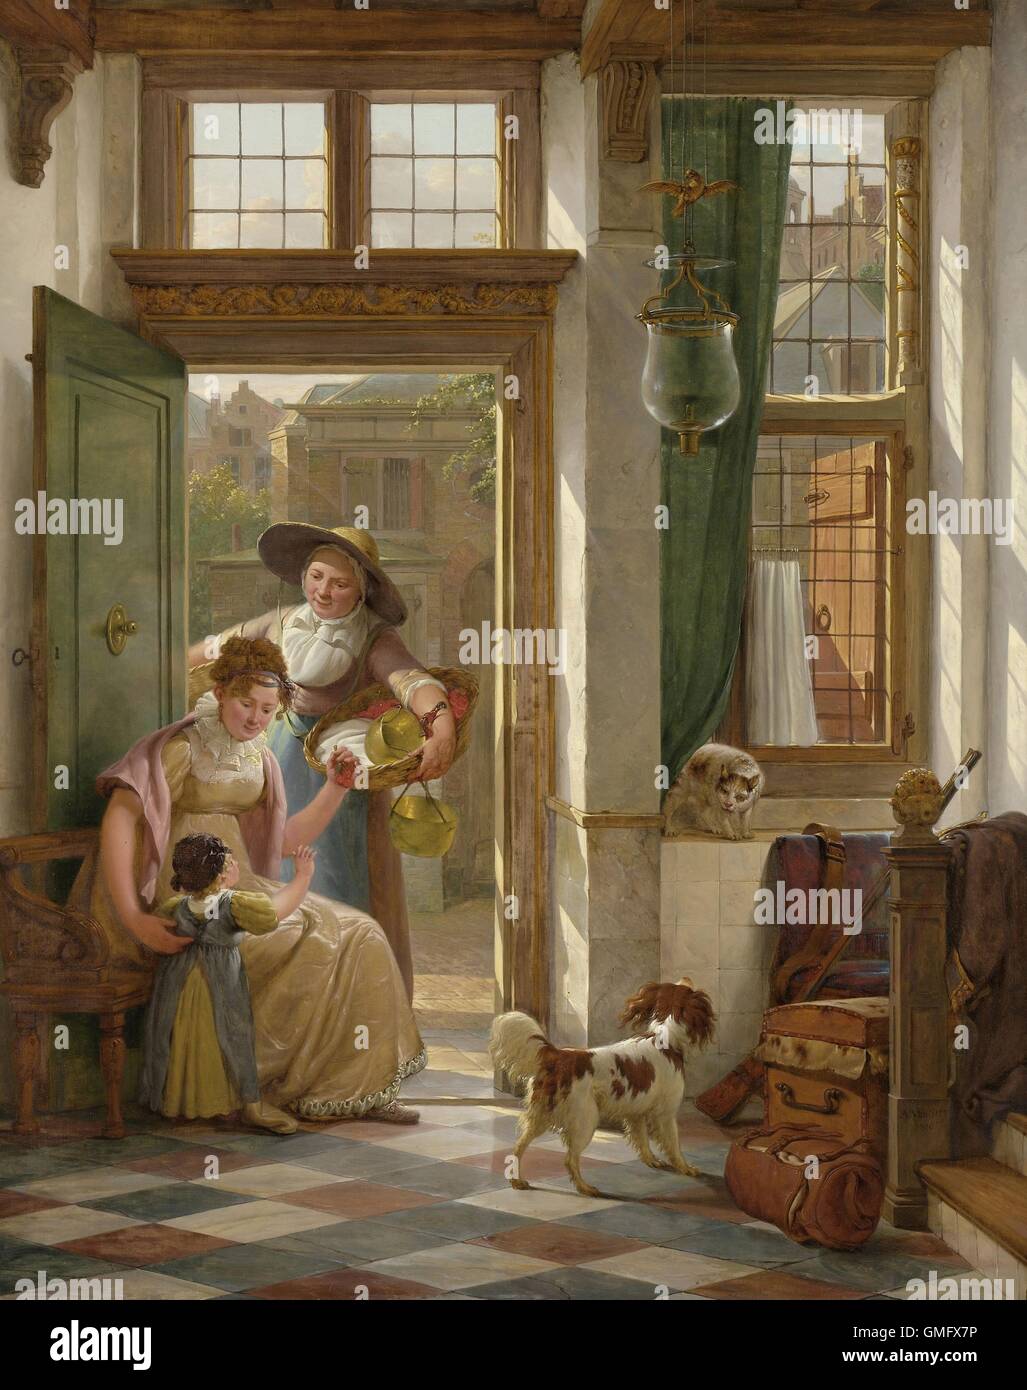 Une Cerise à la porte du vendeur, par Abraham van Strij, 1816, peinture belge, huile sur panneau. Une femme assise près de la porte de sa maison, sa fille montre qu'elle a acheté à partir de cerises une femme à la porte. Un chat et chien ont une BSLOC 2016 (rencontre 2 165) Banque D'Images